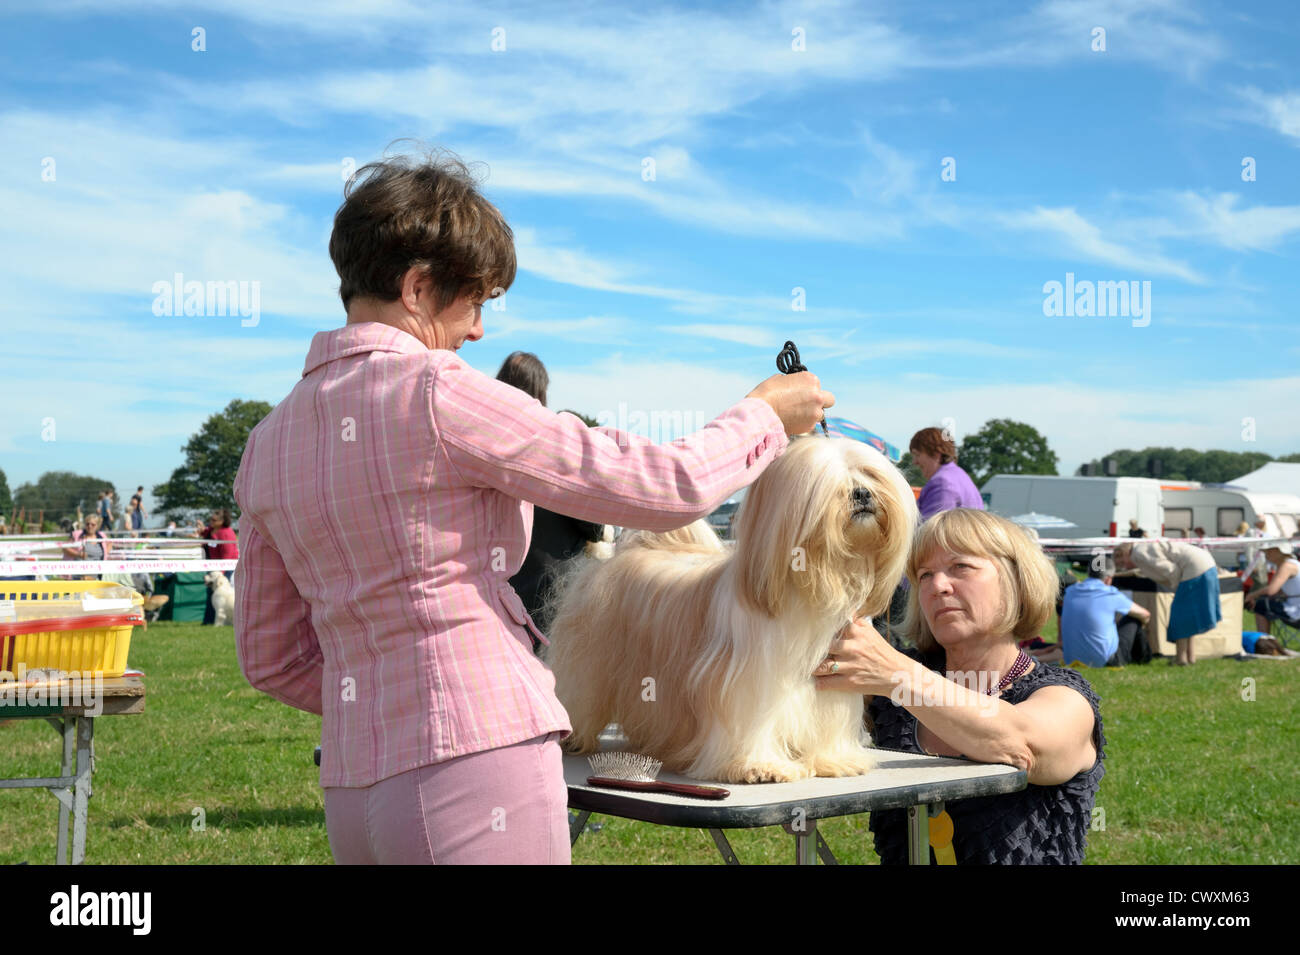 Dog Show à en juger à Kington Show, Herefordshire, UK. Femme juge l'examen de chien debout sur une table. Banque D'Images